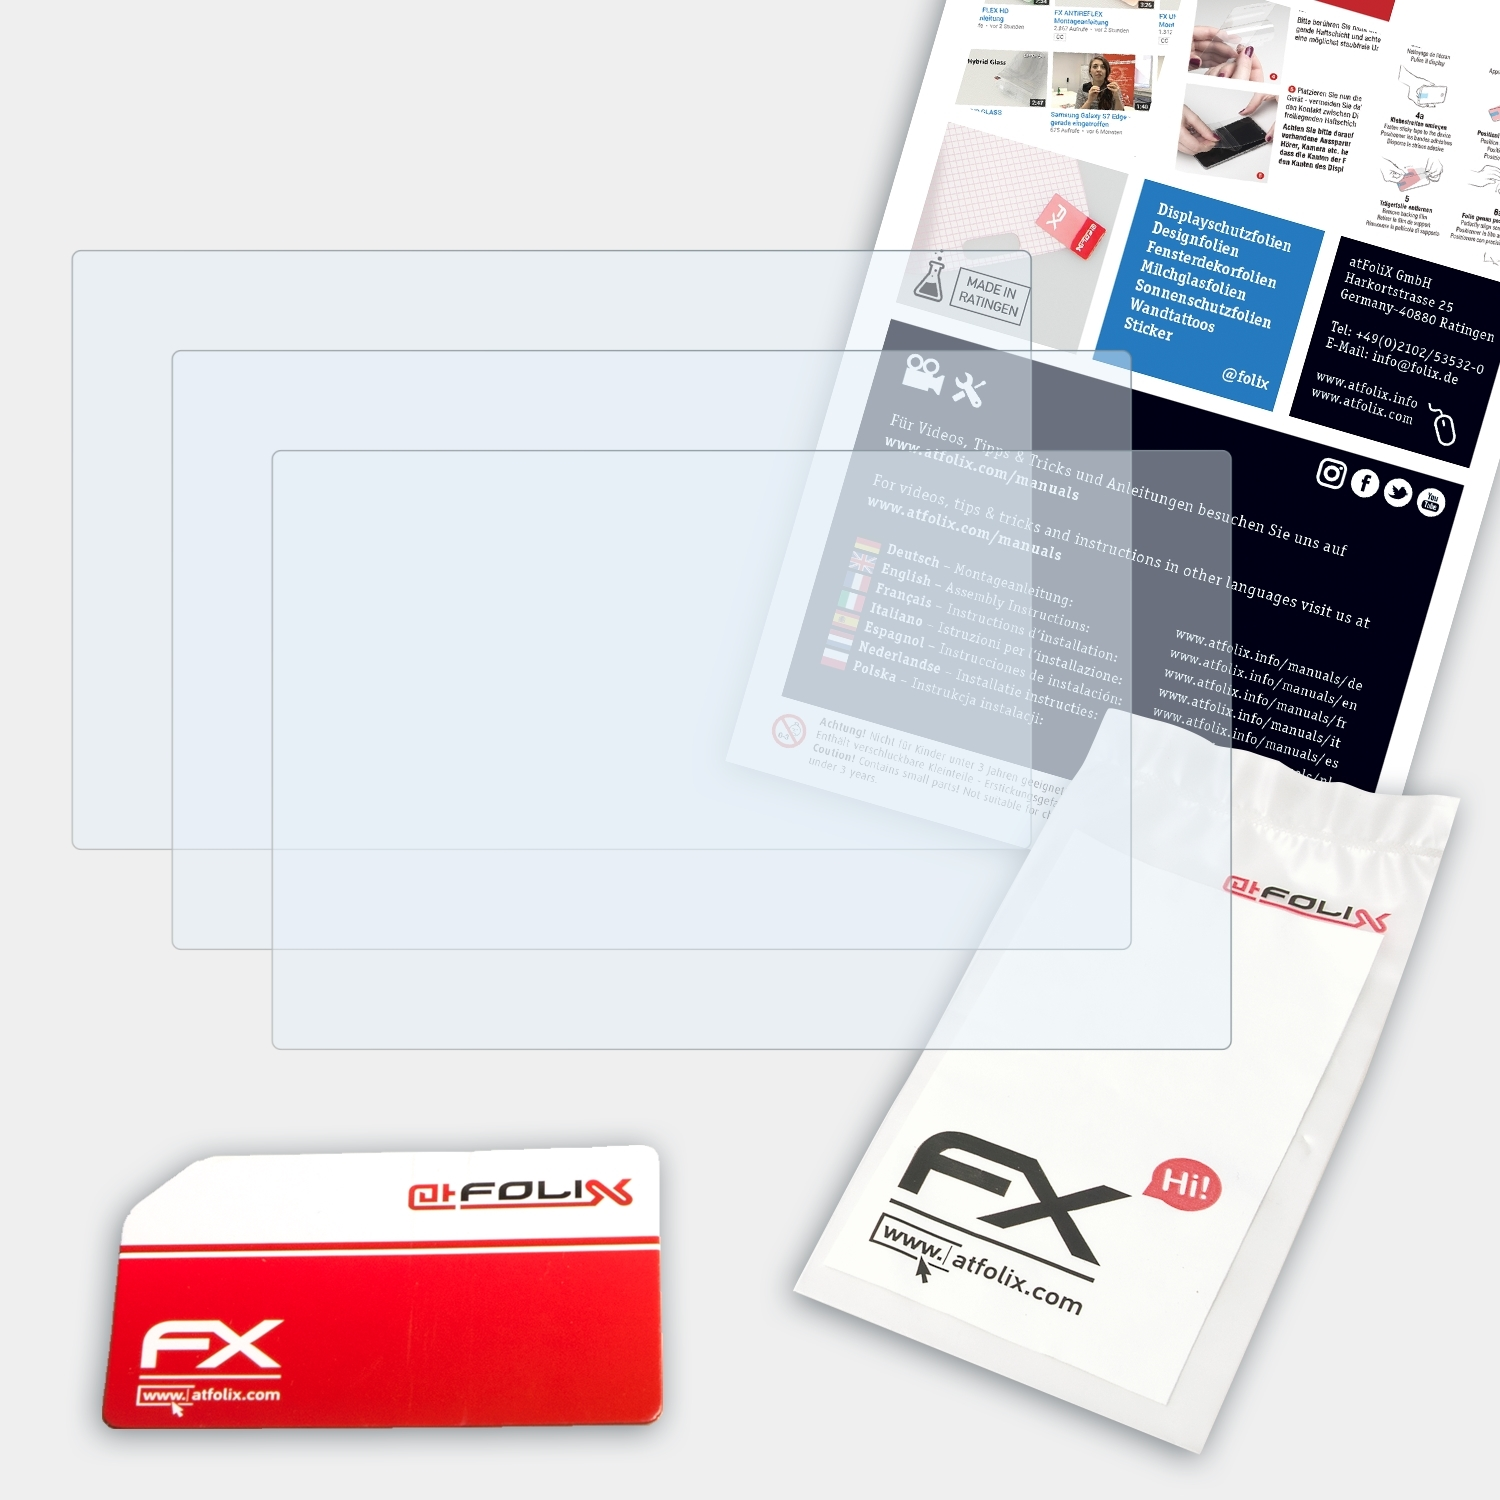 ATFOLIX 3x FX-Clear E5470) GoPal Medion Displayschutz(für